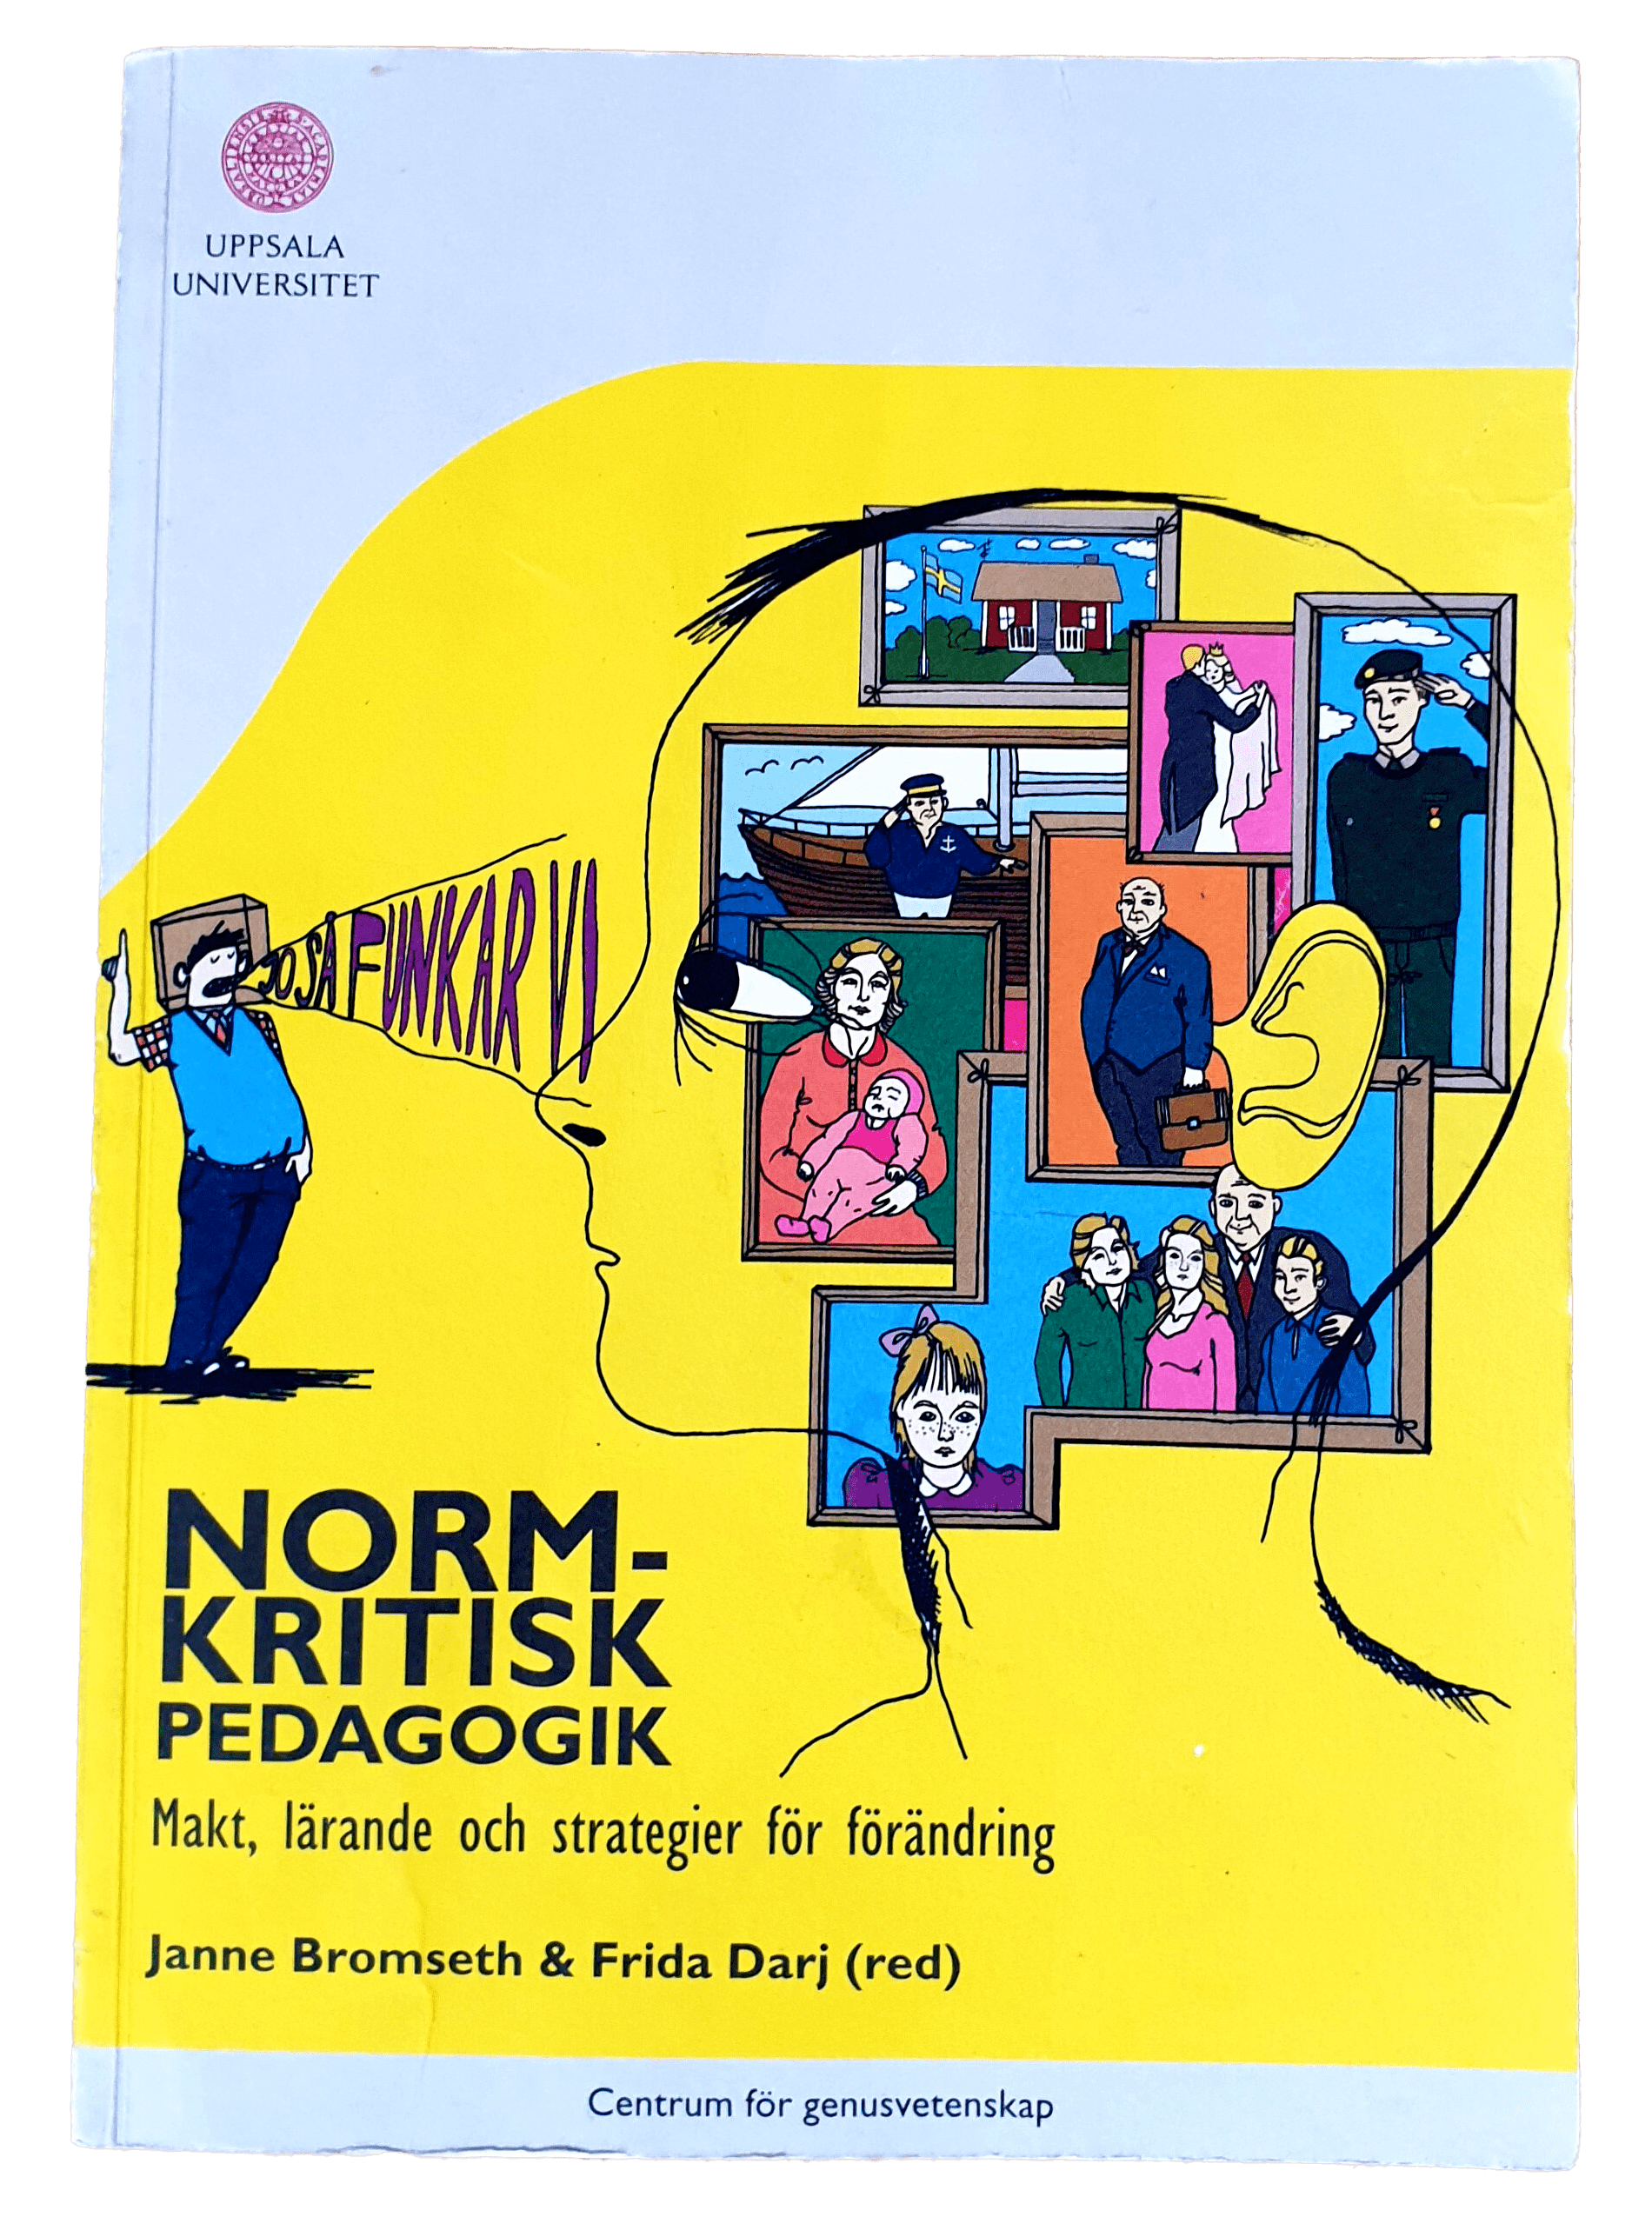 Normkritisk pedagogik. Makt, lärande och strategier för förändring, 2009. Den första boken som beskrev begreppet normkritisk pedagogik. Lotta Björkman.